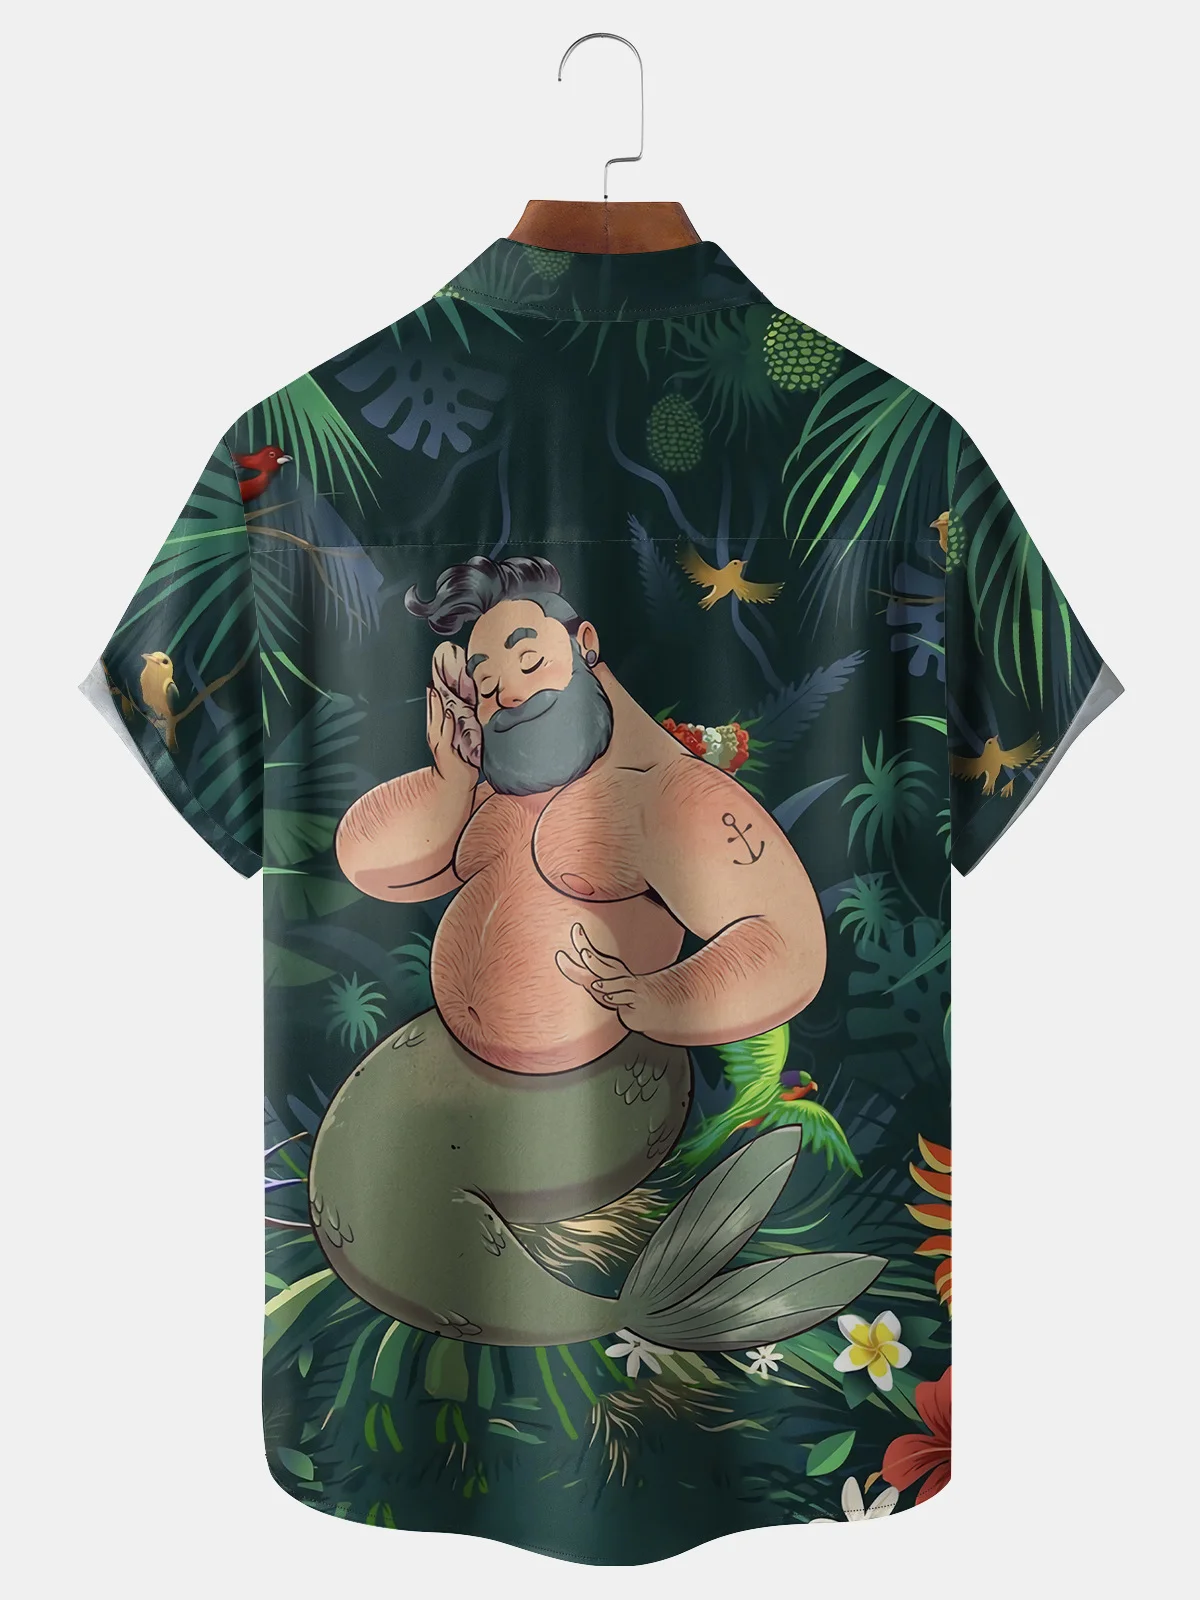 Hardaddy Mermaid Floral Chest Pocket Short Sleeve Hawaiian Shirt